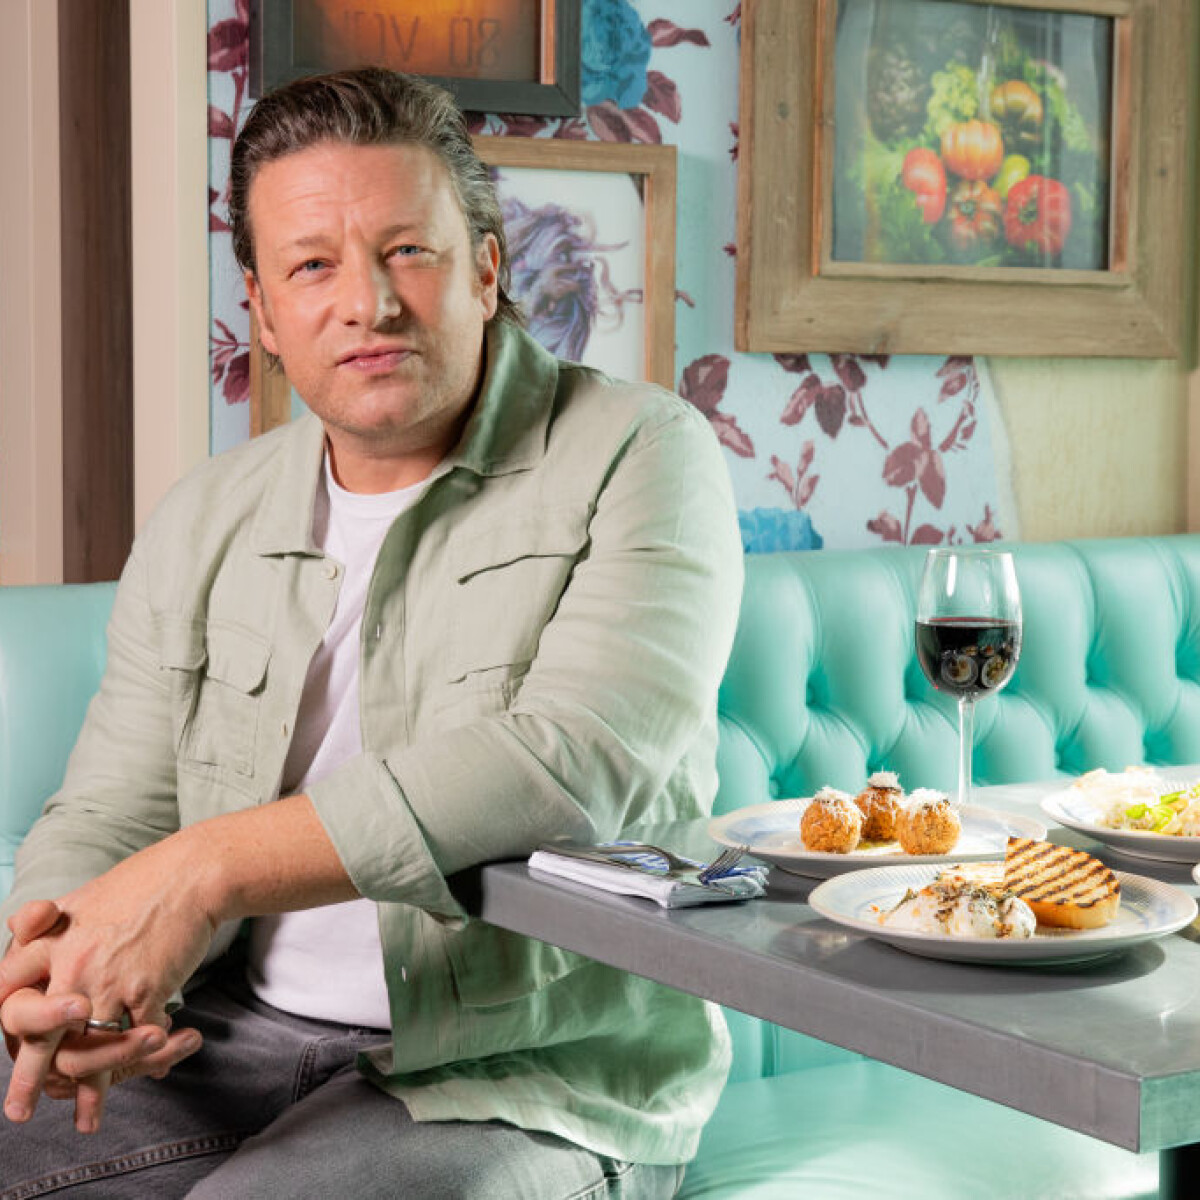 Megorroltak a nézők Jamie Oliverre új főzőműsora miatt